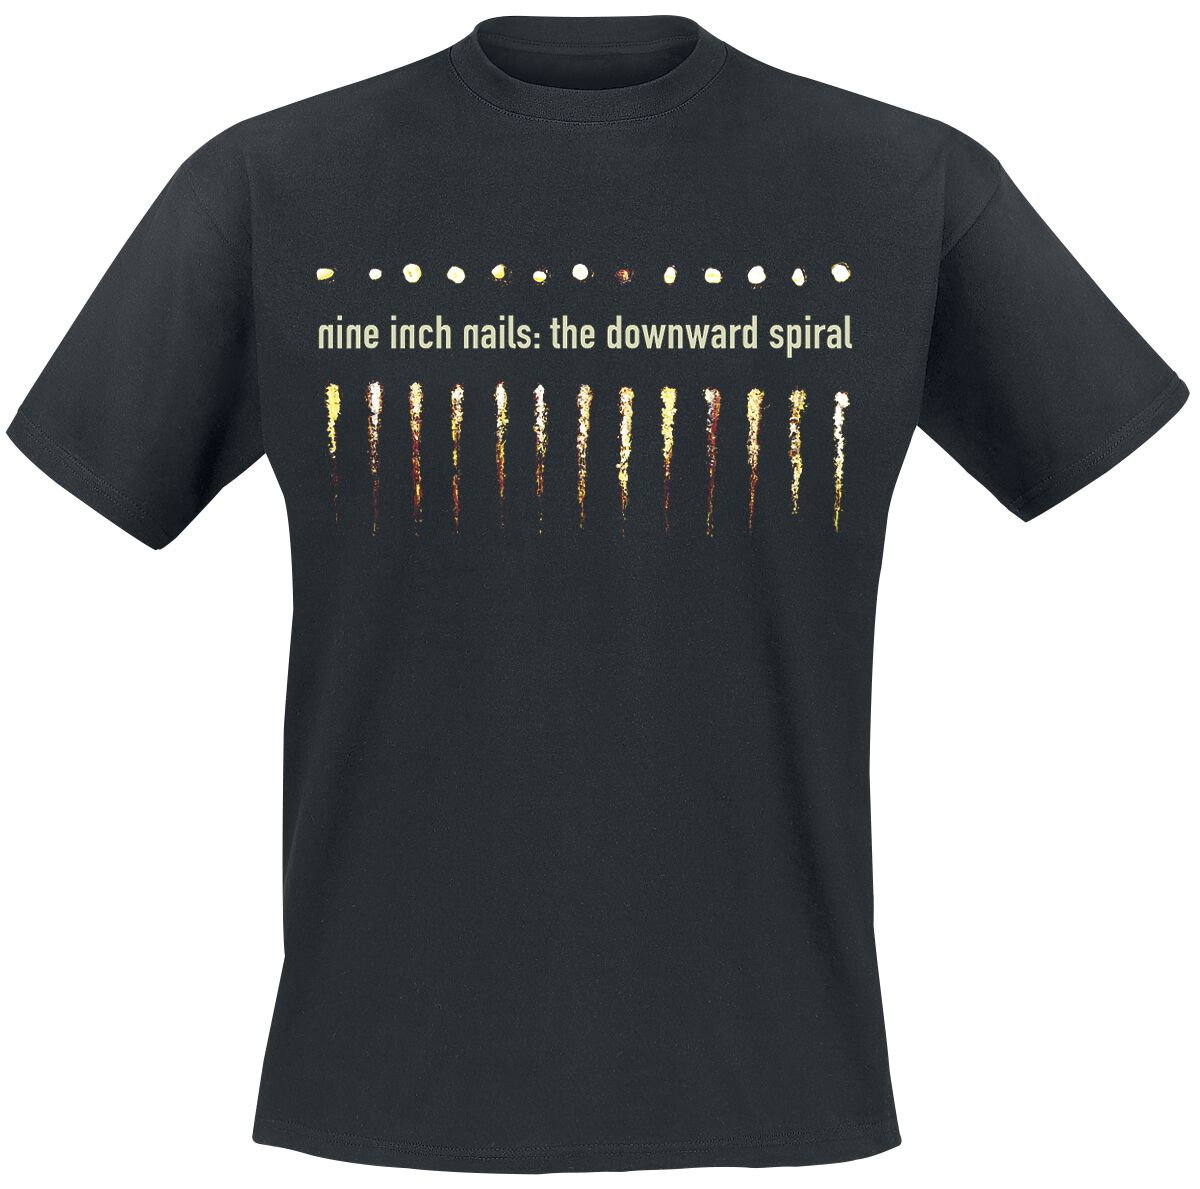 nine inch nails t-shirt - downward spiral - s bis xxl - fÃ¼r mÃ¤nner - grÃ¶ÃŸe l - - lizenziertes merchandise! schwarz